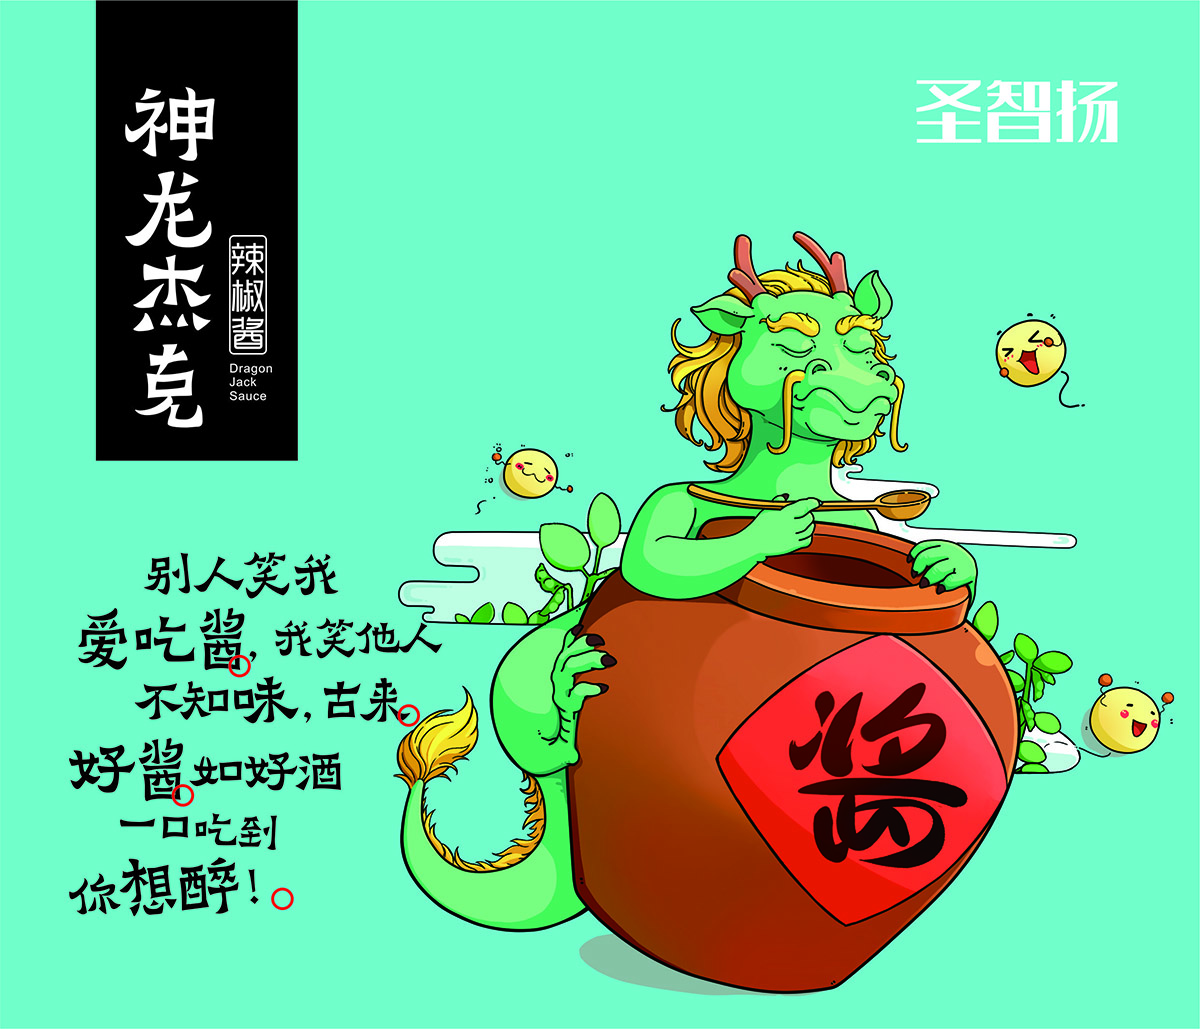 圣智扬2017年重庆糖酒会邀请函（十二生肖创意汇）